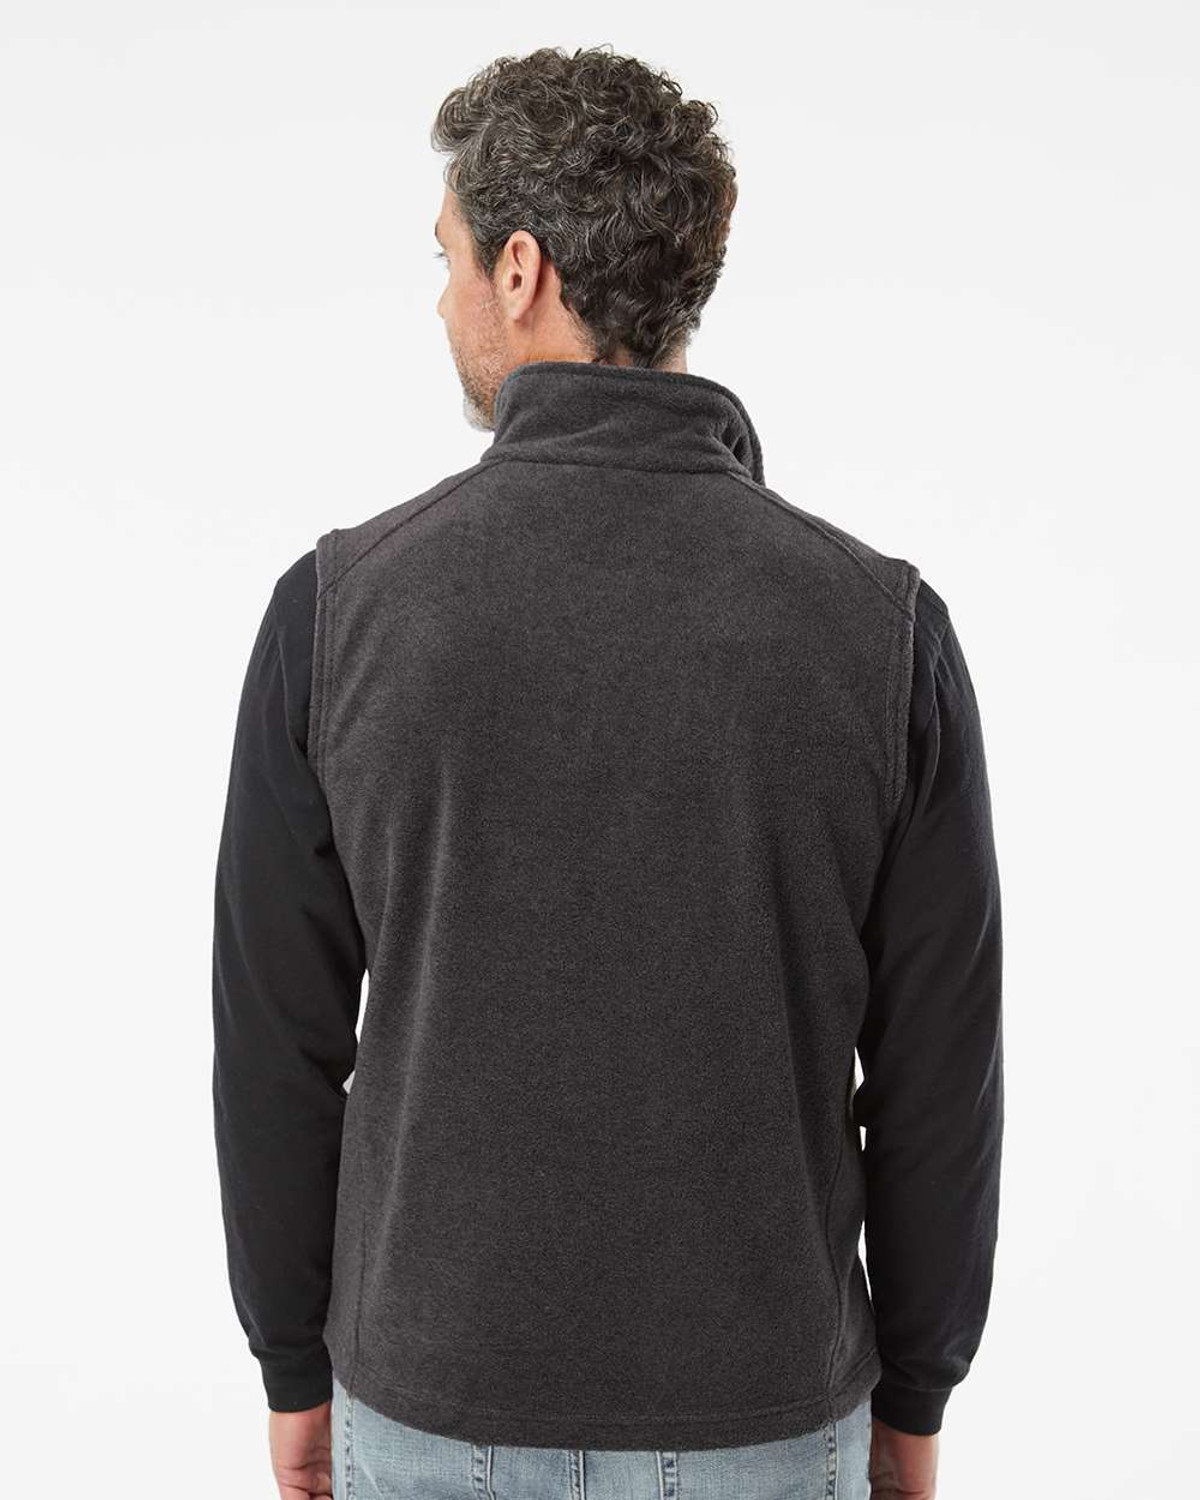 Fleece Full-Zip Vest